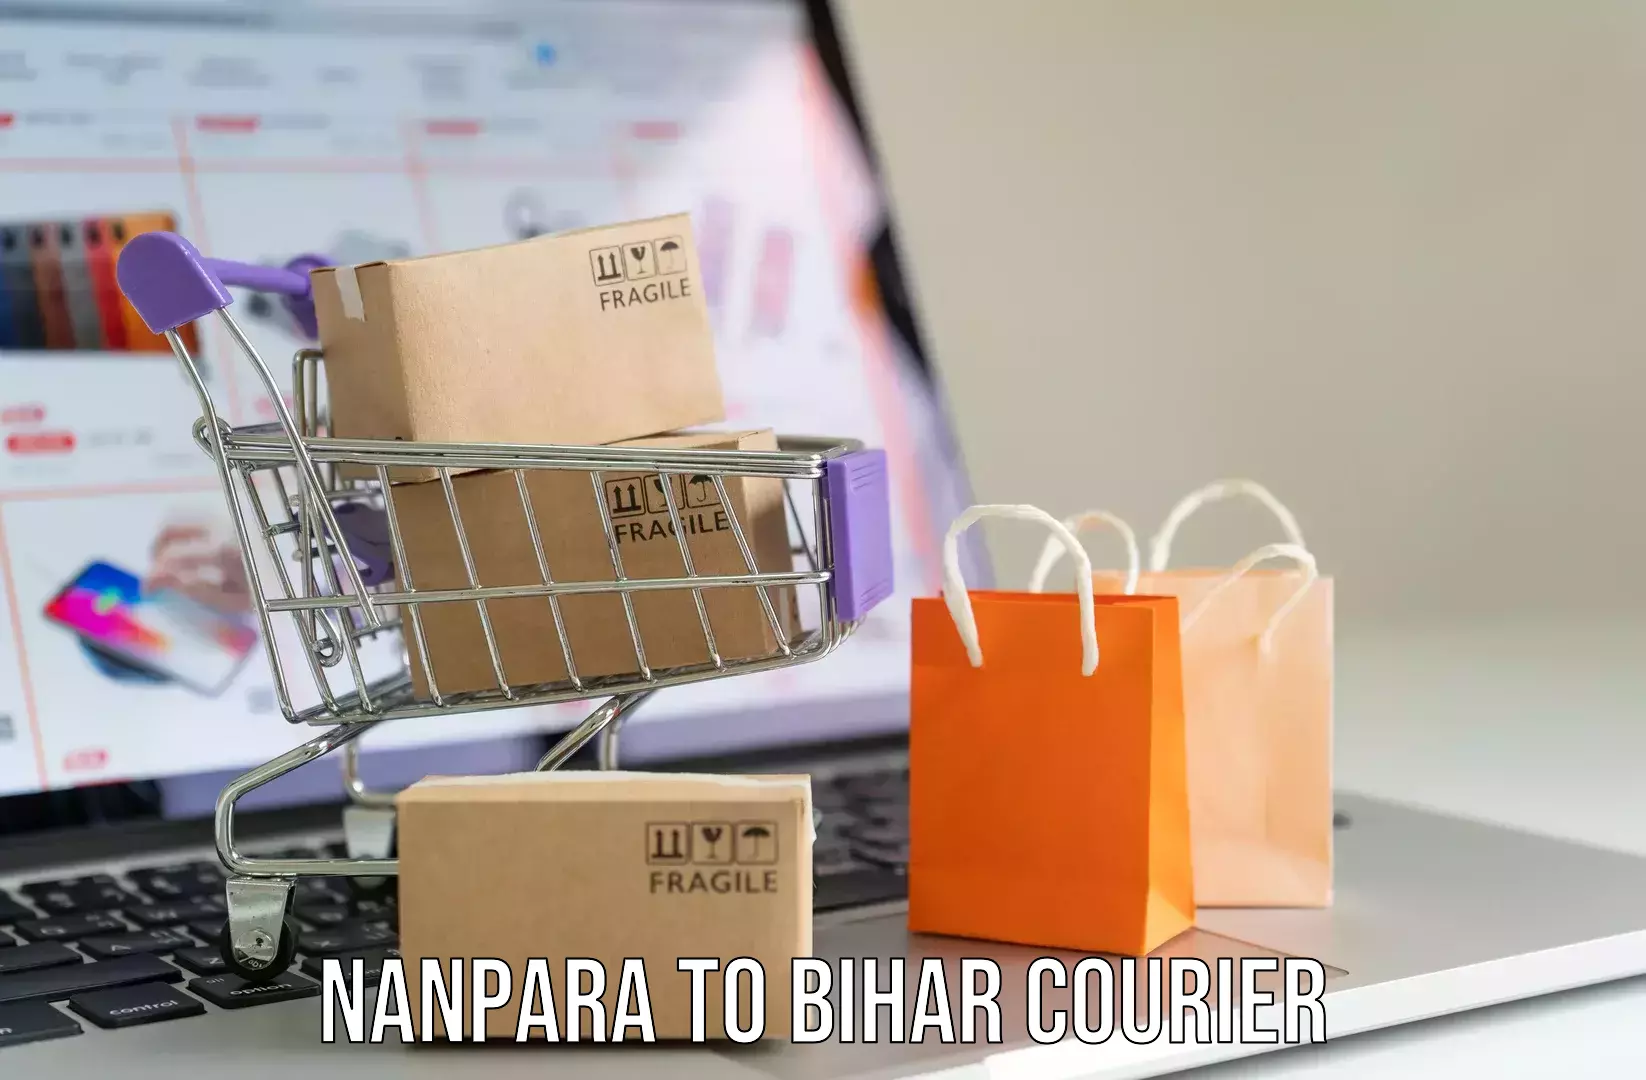 Luggage delivery app Nanpara to Malmaliya